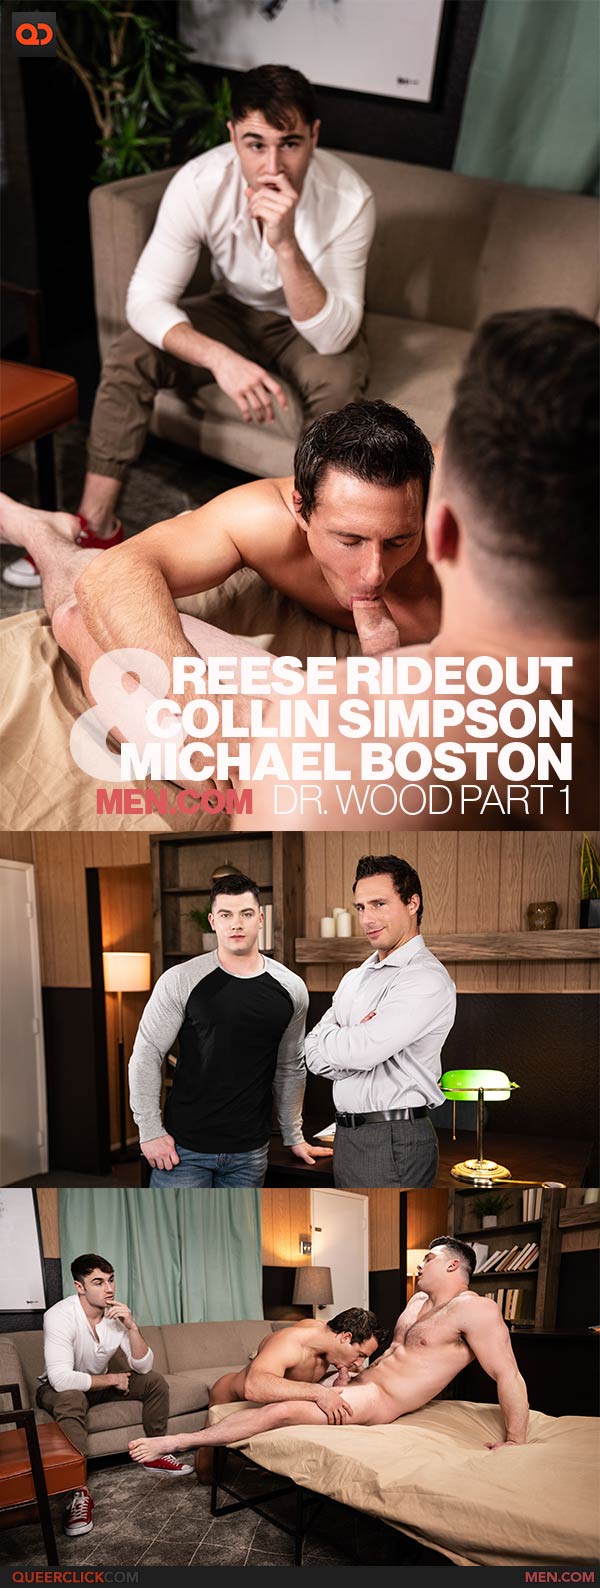 Men.com: Reese Rideout(!), Collin Simpson and Michael Boston _ SCENE LIVE FEBRUARY 22